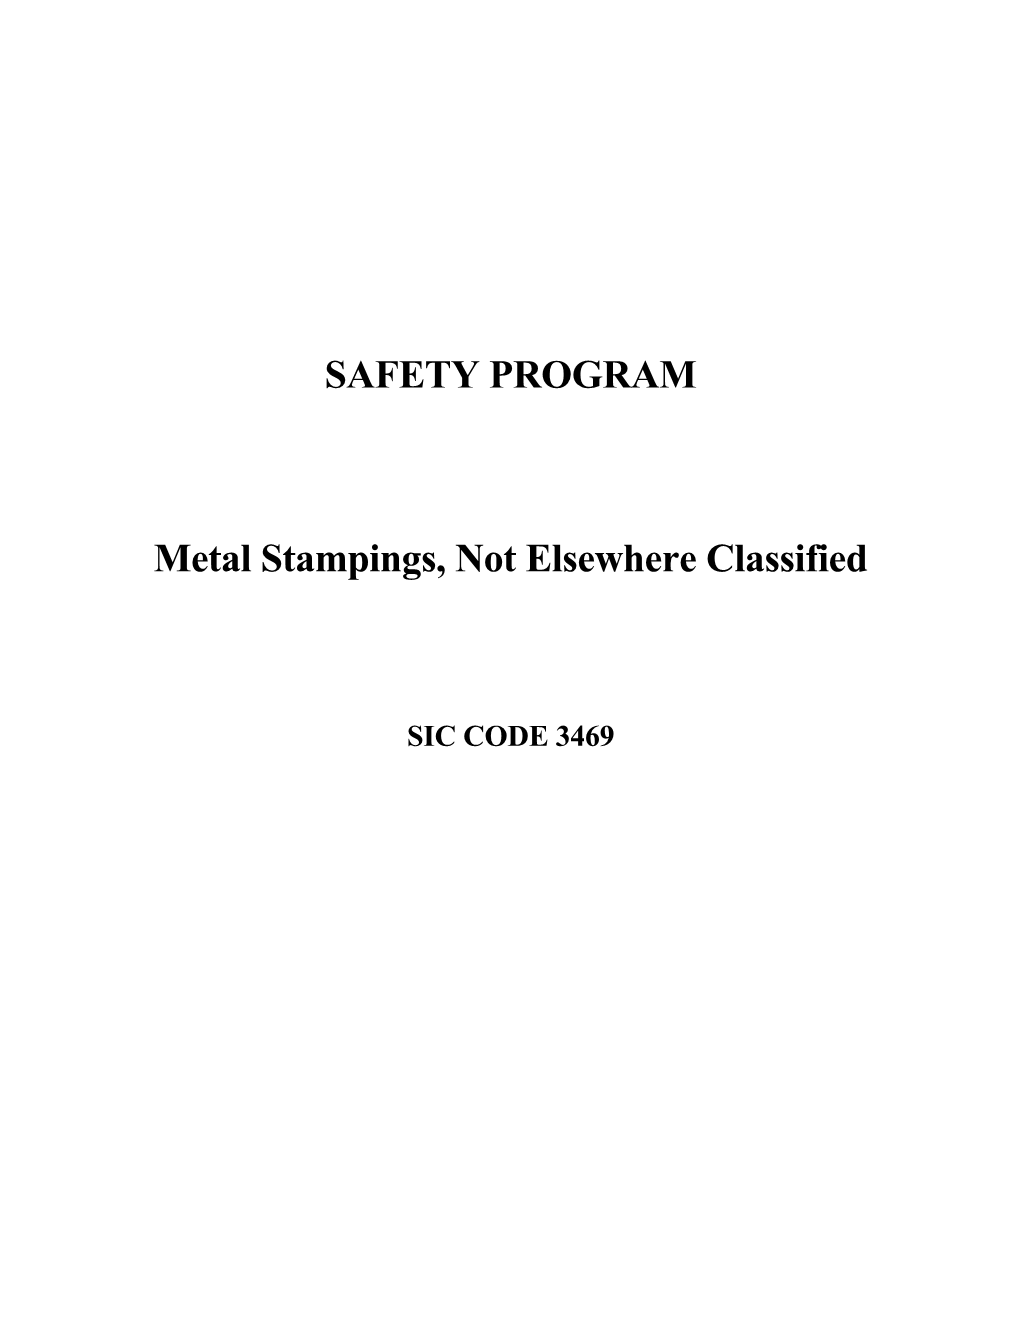 Metal Stampings Safety Program